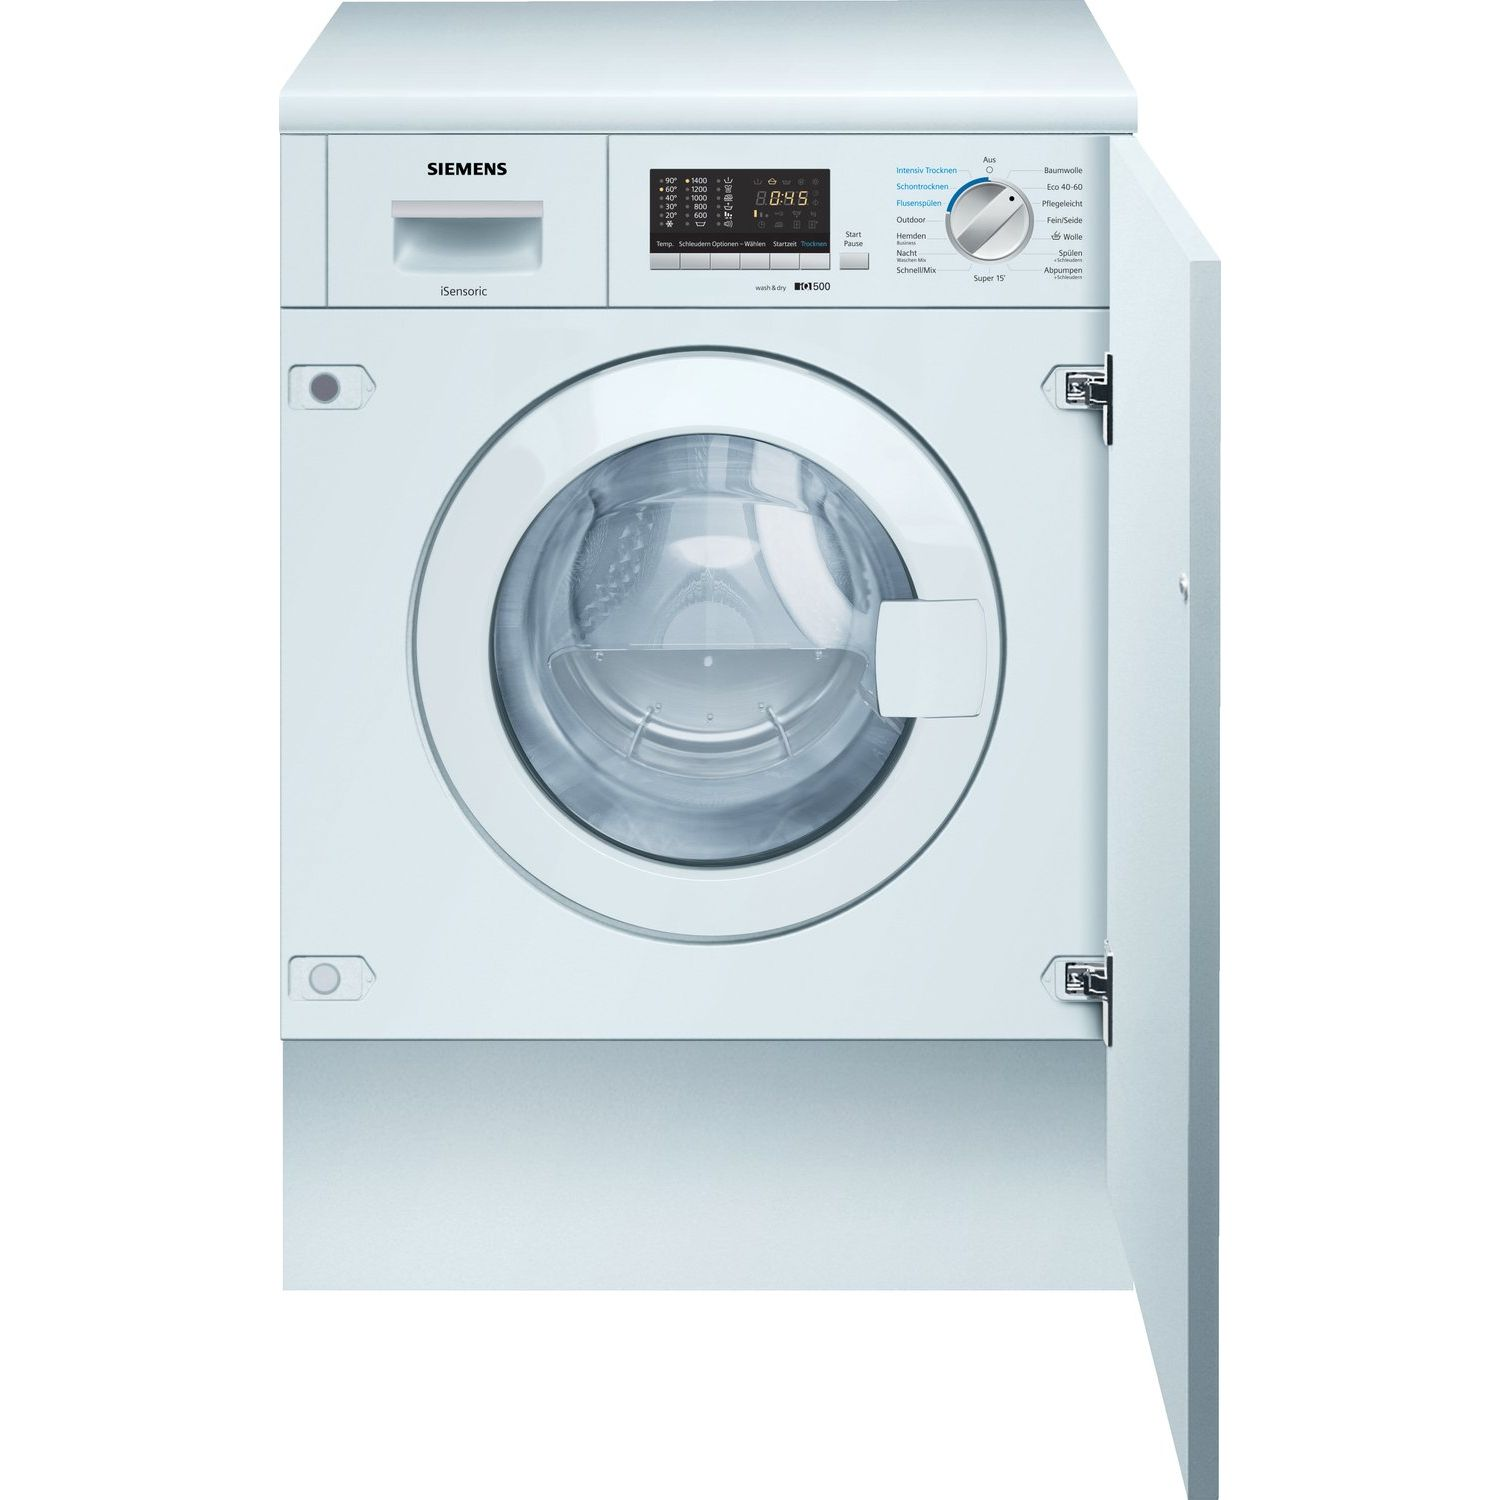 SIEMENS REFURBISHED (*) 9 / 1551 Waschmaschine Serie kg Vormisch-Technologie (9 8000 ÖkoMix U/Min.) kg, mit WK14D543